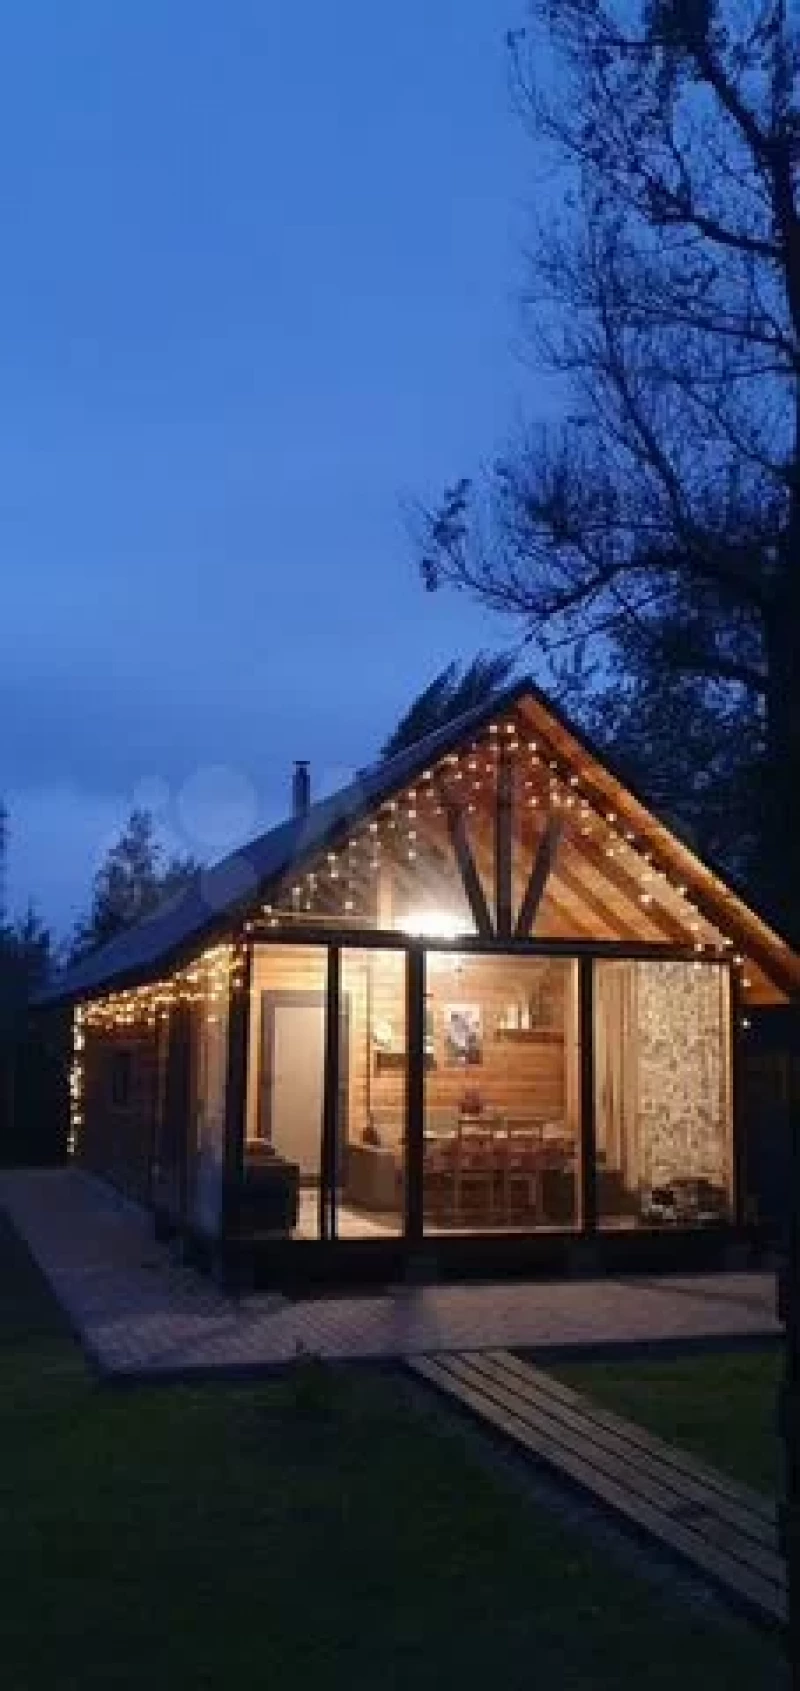 Уютный и трендовый дачный домик продают в пригороде Барнауле за 4,3 млн рублей